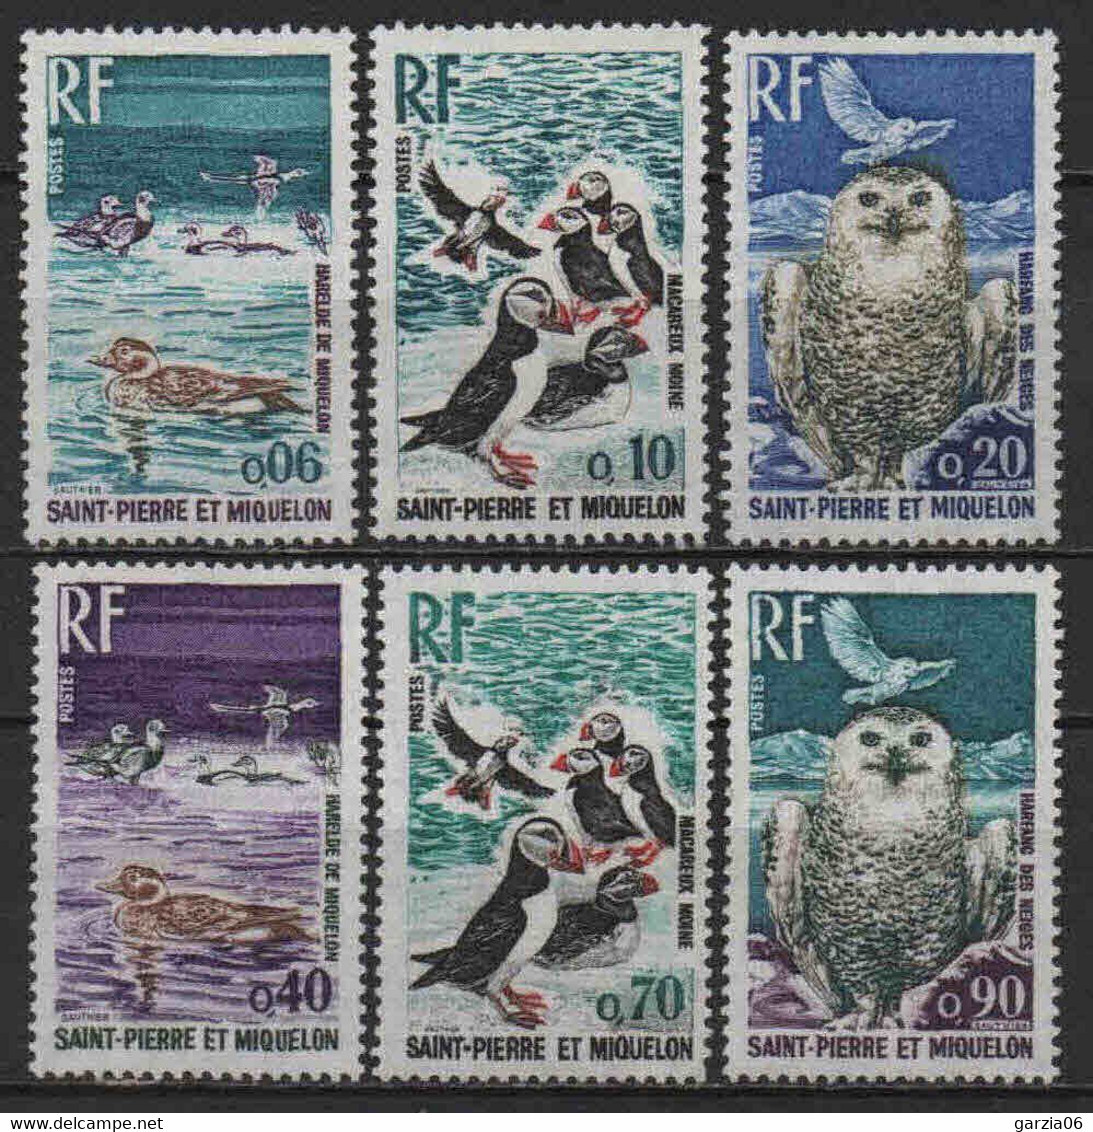 St Pierre Et Miquelon  - 1973  - Oiseaux  - N° 425 à 430  - Neufs ** MNH - Ungebraucht